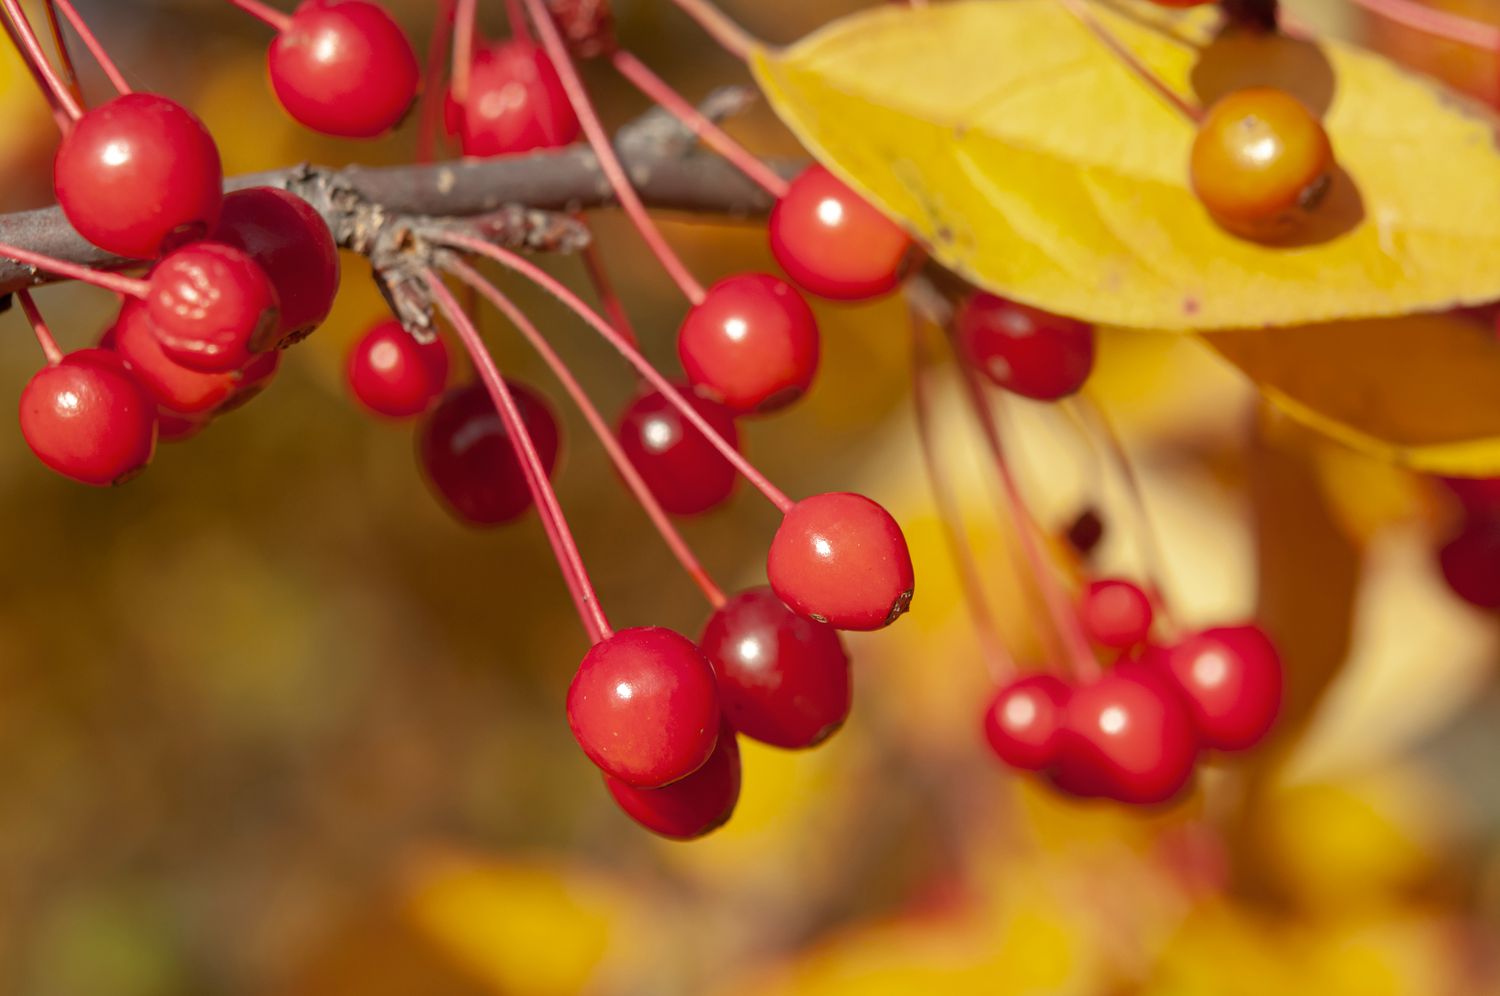 Trauerapfelzweig mit kleinen roten Früchten und gelbem Blatt im Sonnenlicht in Nahaufnahme